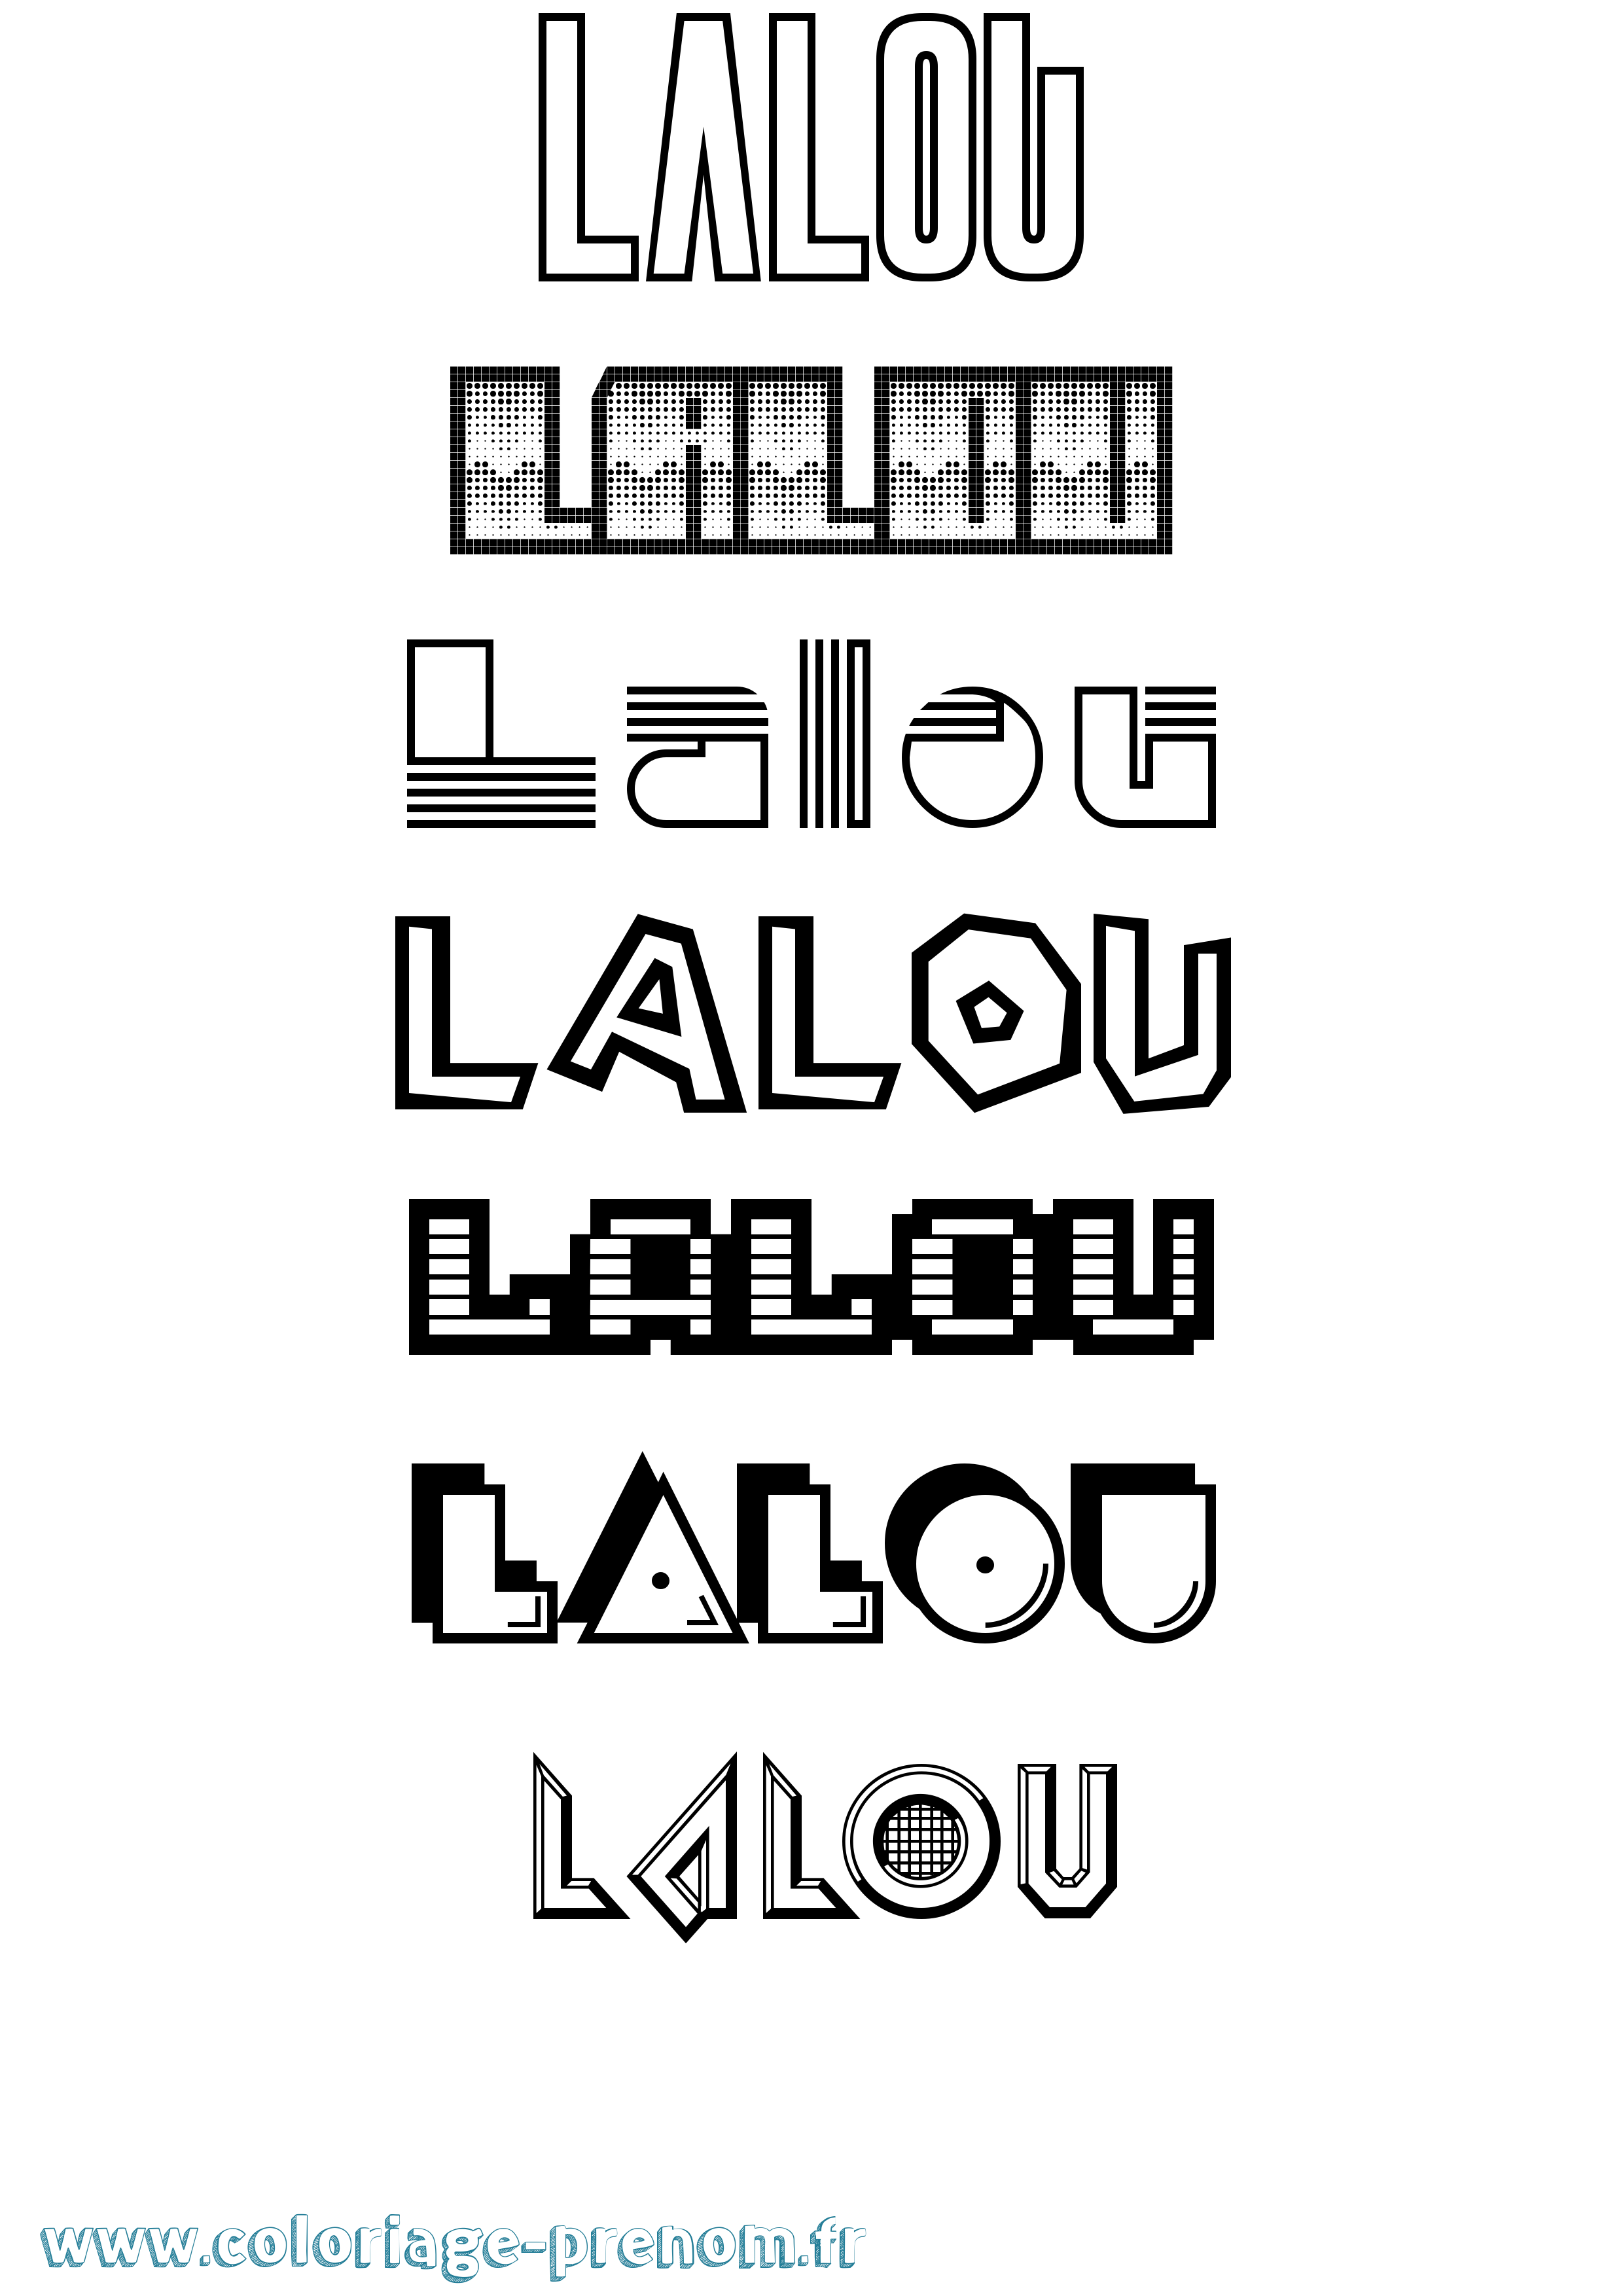 Coloriage prénom Lalou Jeux Vidéos